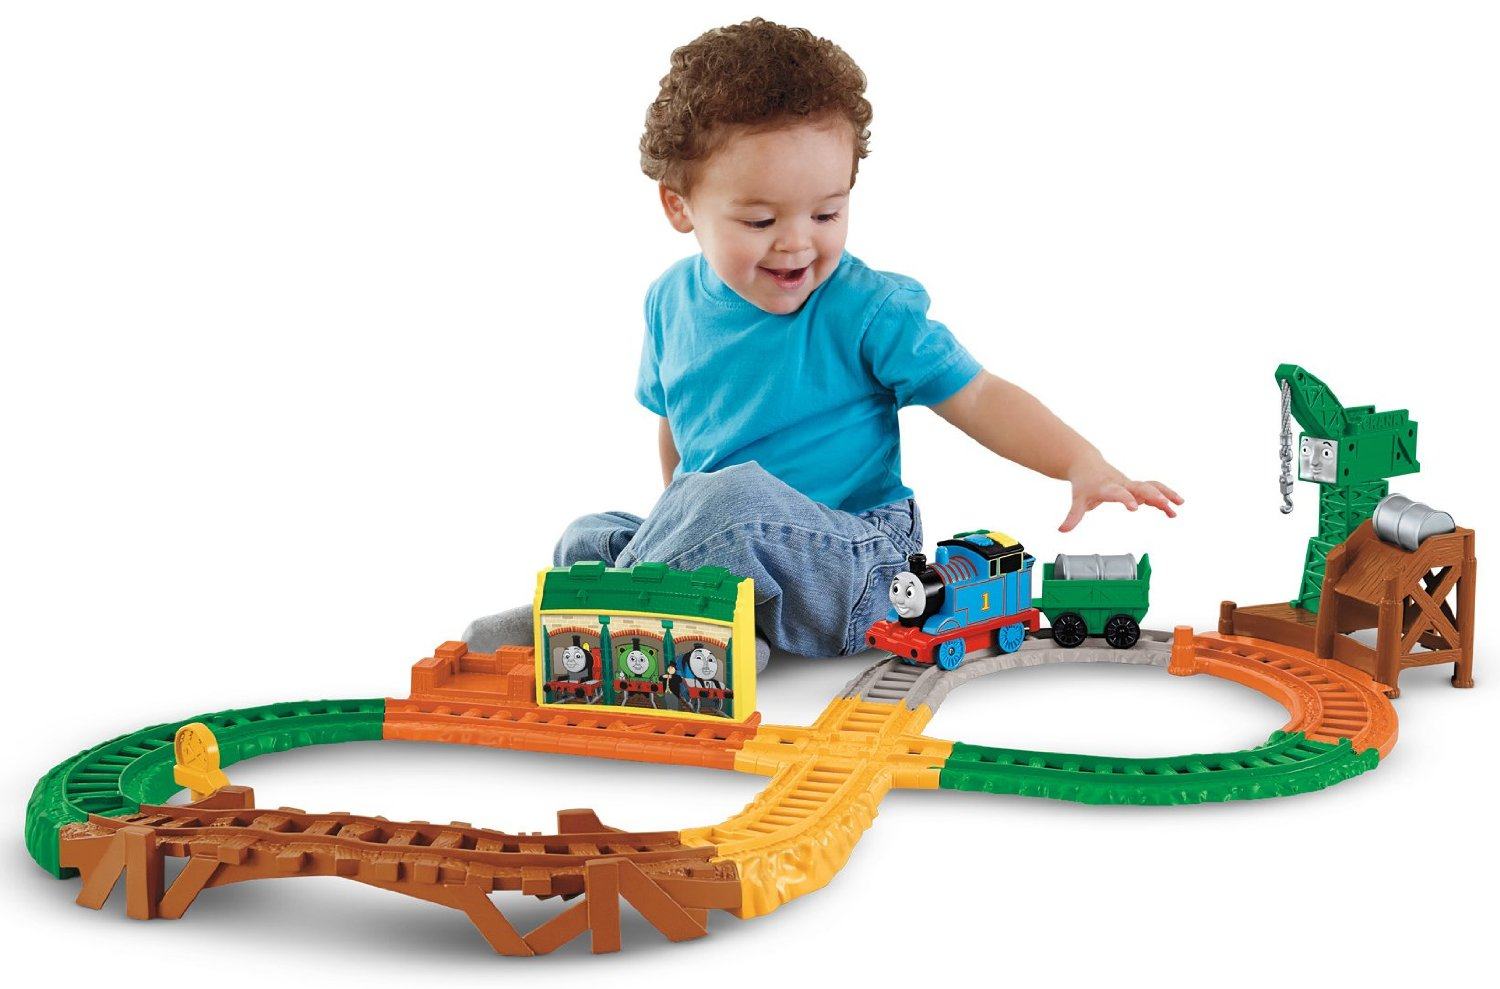 Chọn đồ chơi thích hợp cho bé trong giai đoạn từ 1 – 3 tuổi